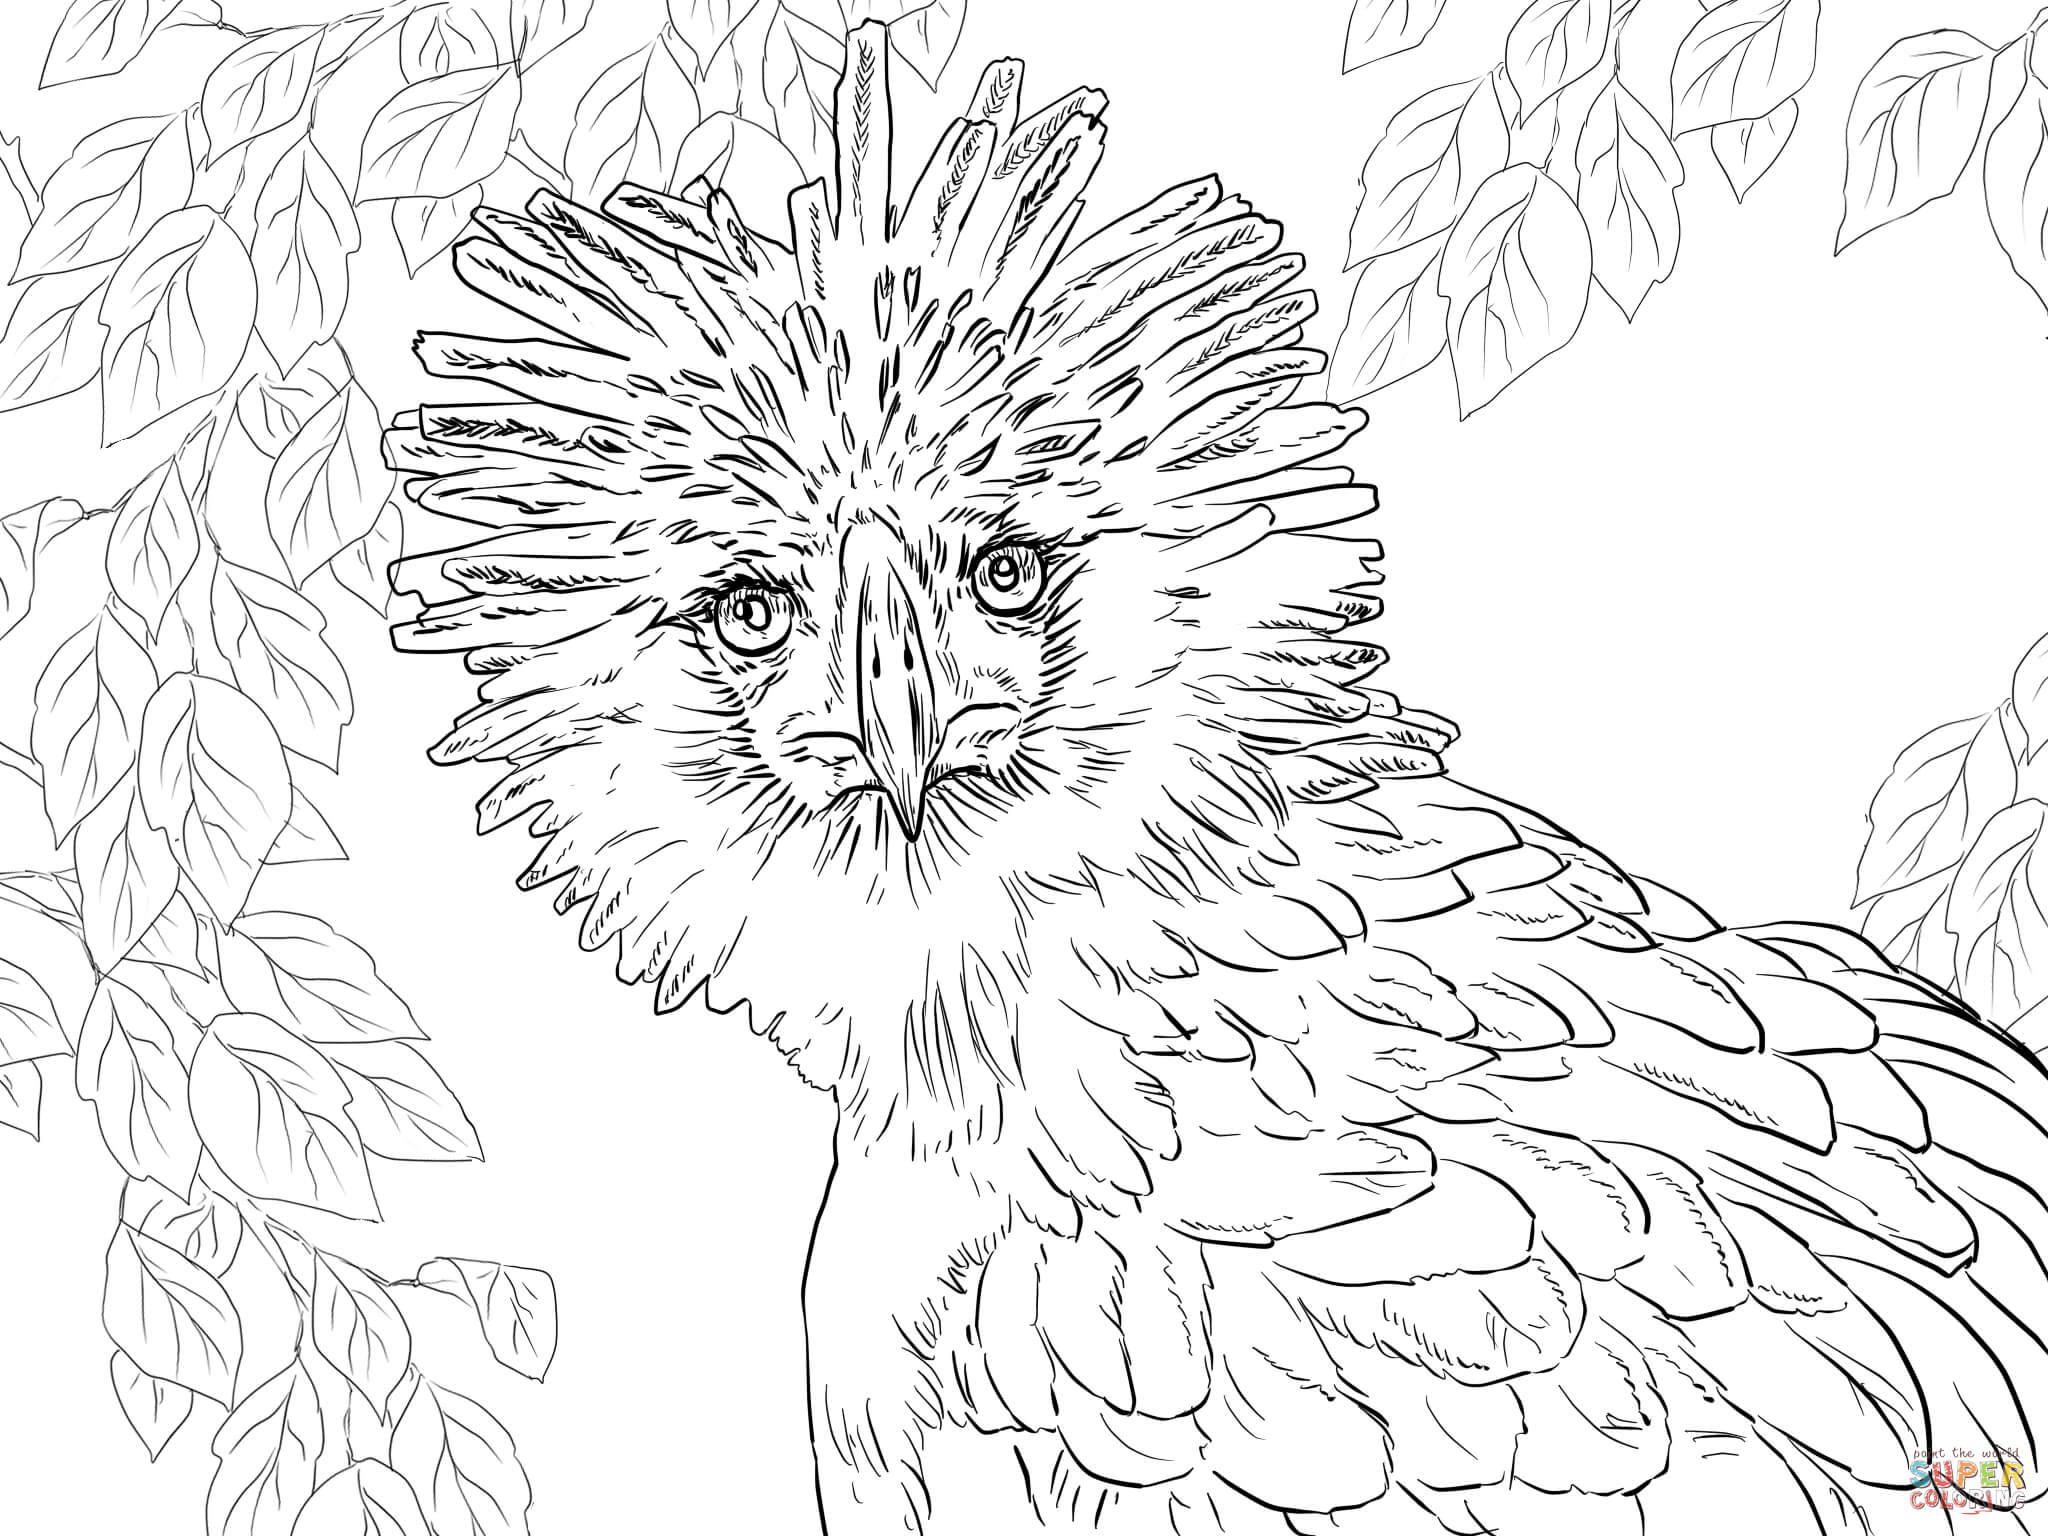 Adler coloring #18, Download drawings